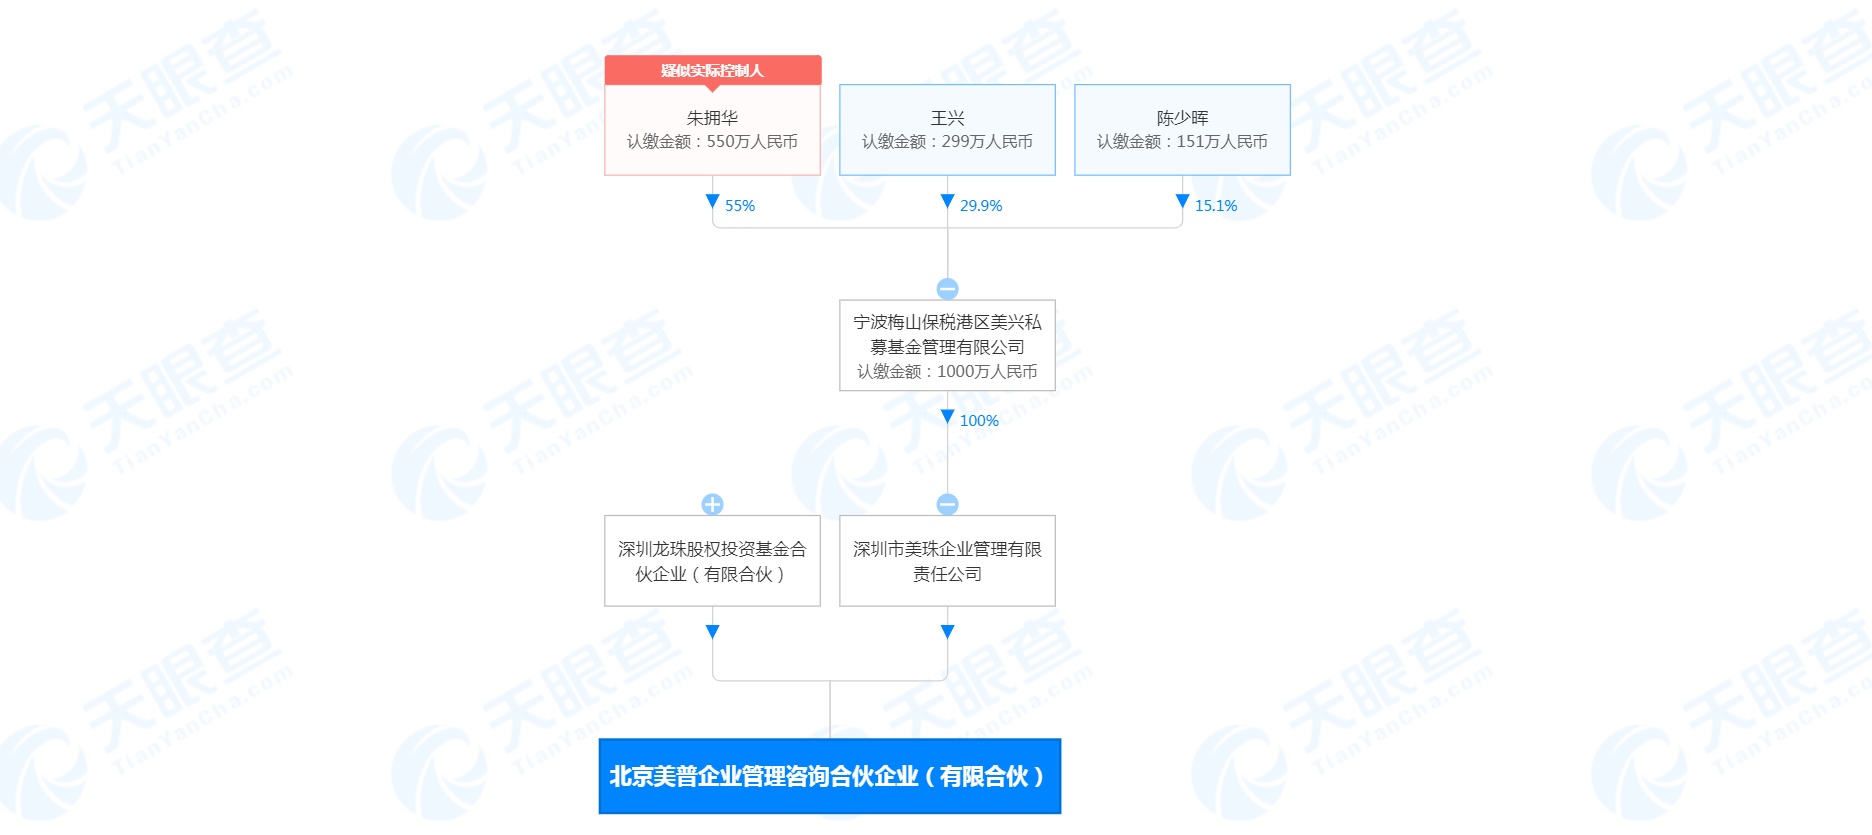 北京美普企业管理咨询合伙企业成立 王兴持股29.9%